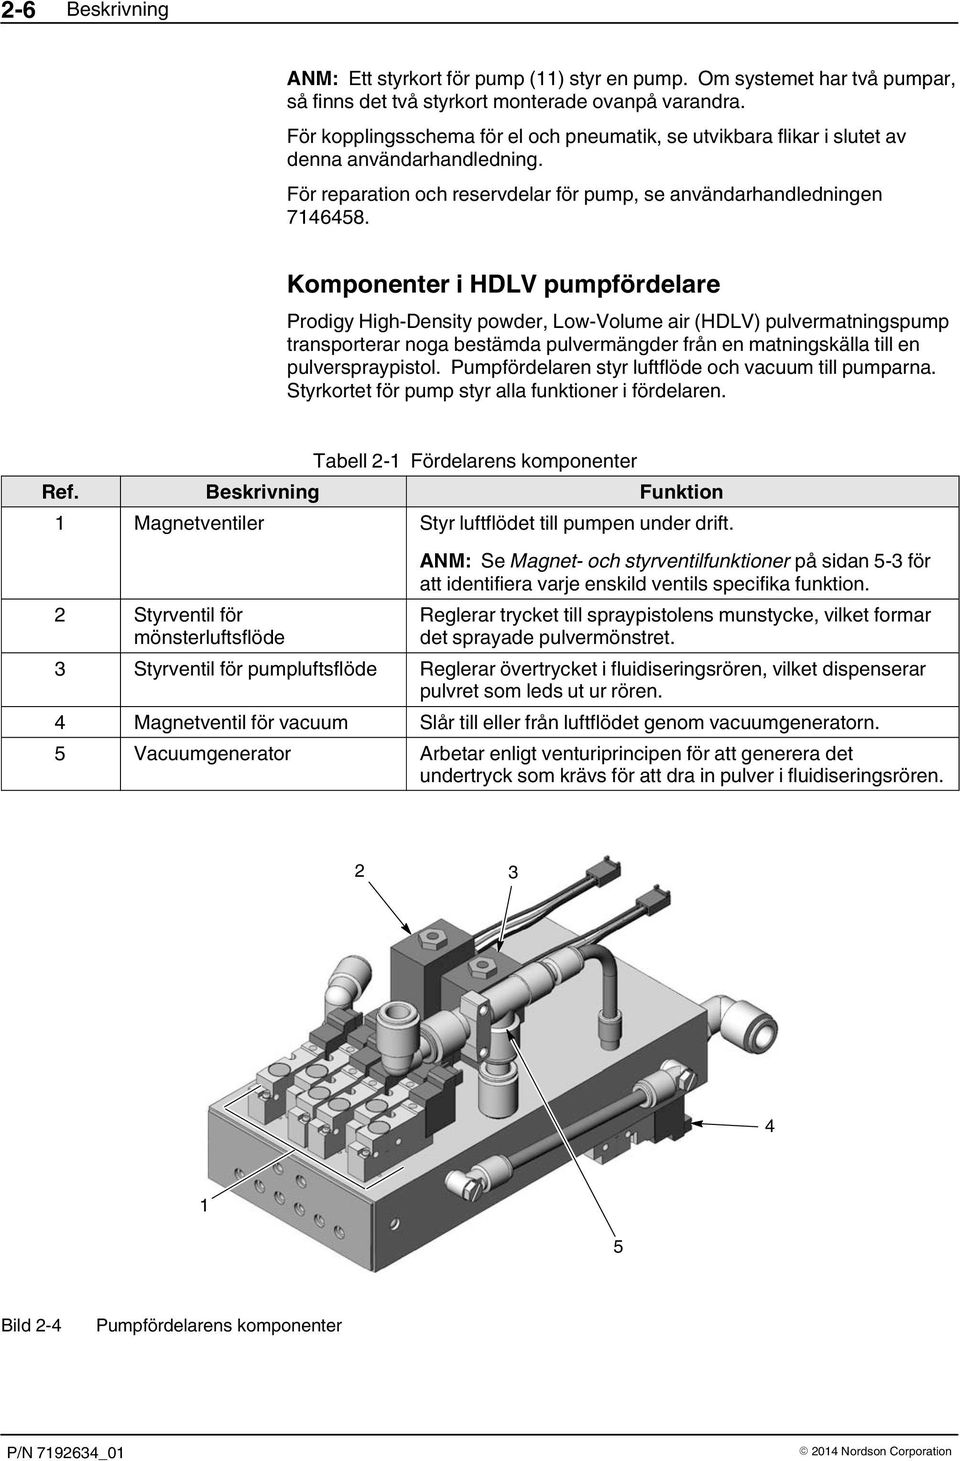 Komponenter i HDLV pumpfördelare Prodigy High Density powder, Low Volume air (HDLV) pulvermatningspump transporterar noga bestämda pulvermängder från en matningskälla till en pulverspraypistol.